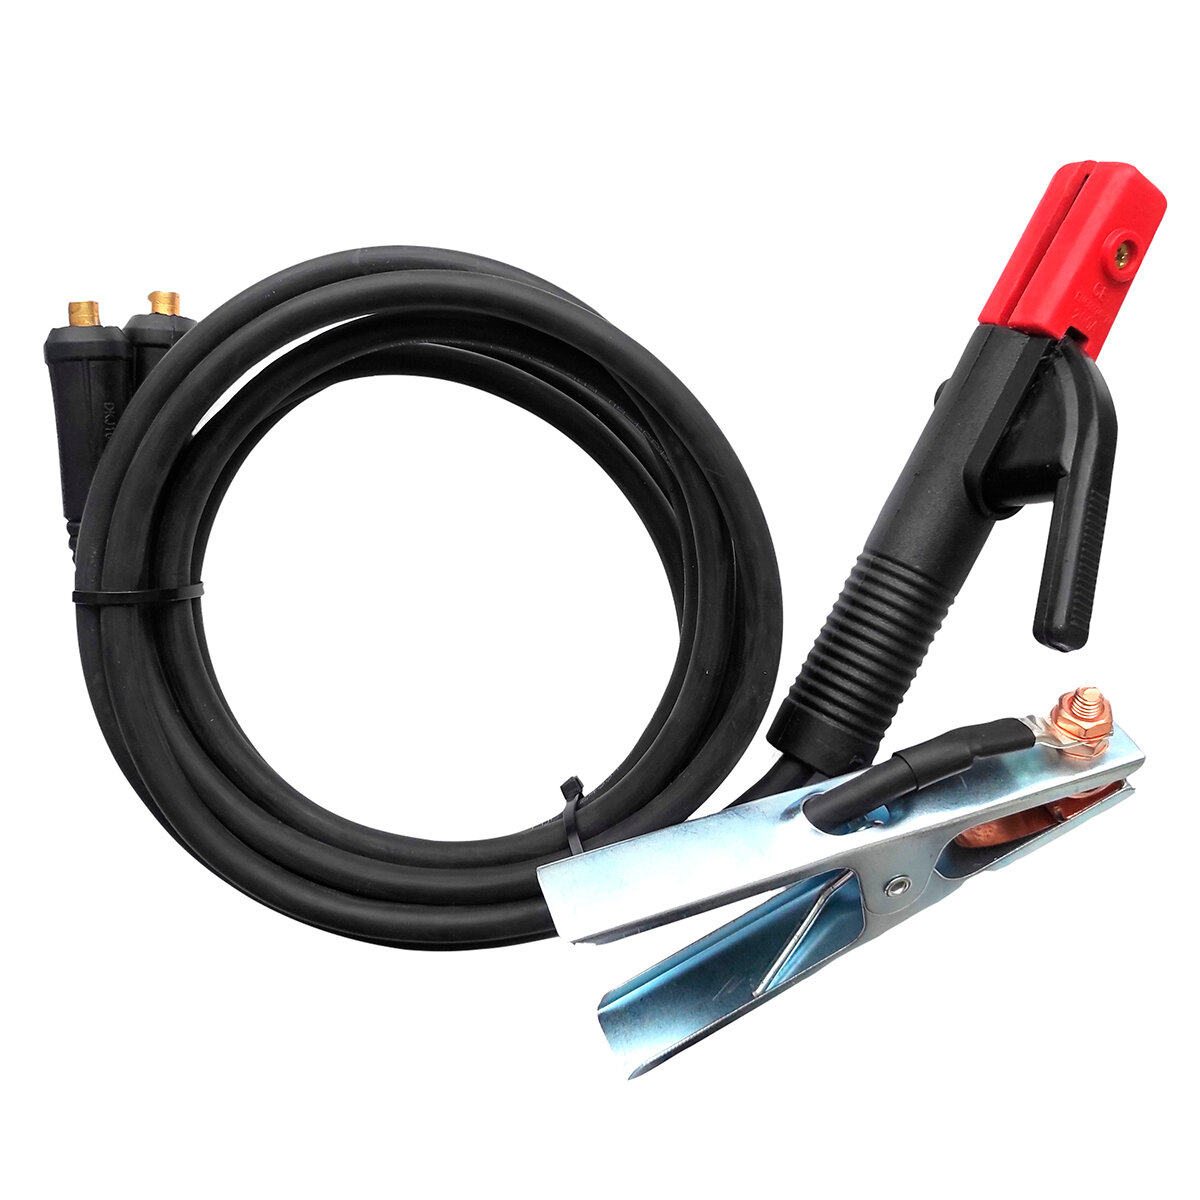 Комплект кабелей d16 mm 4м Профессионал 015 комплект сварочных кабелей vebex 2 0 метра держатели 300а вилки 10 25